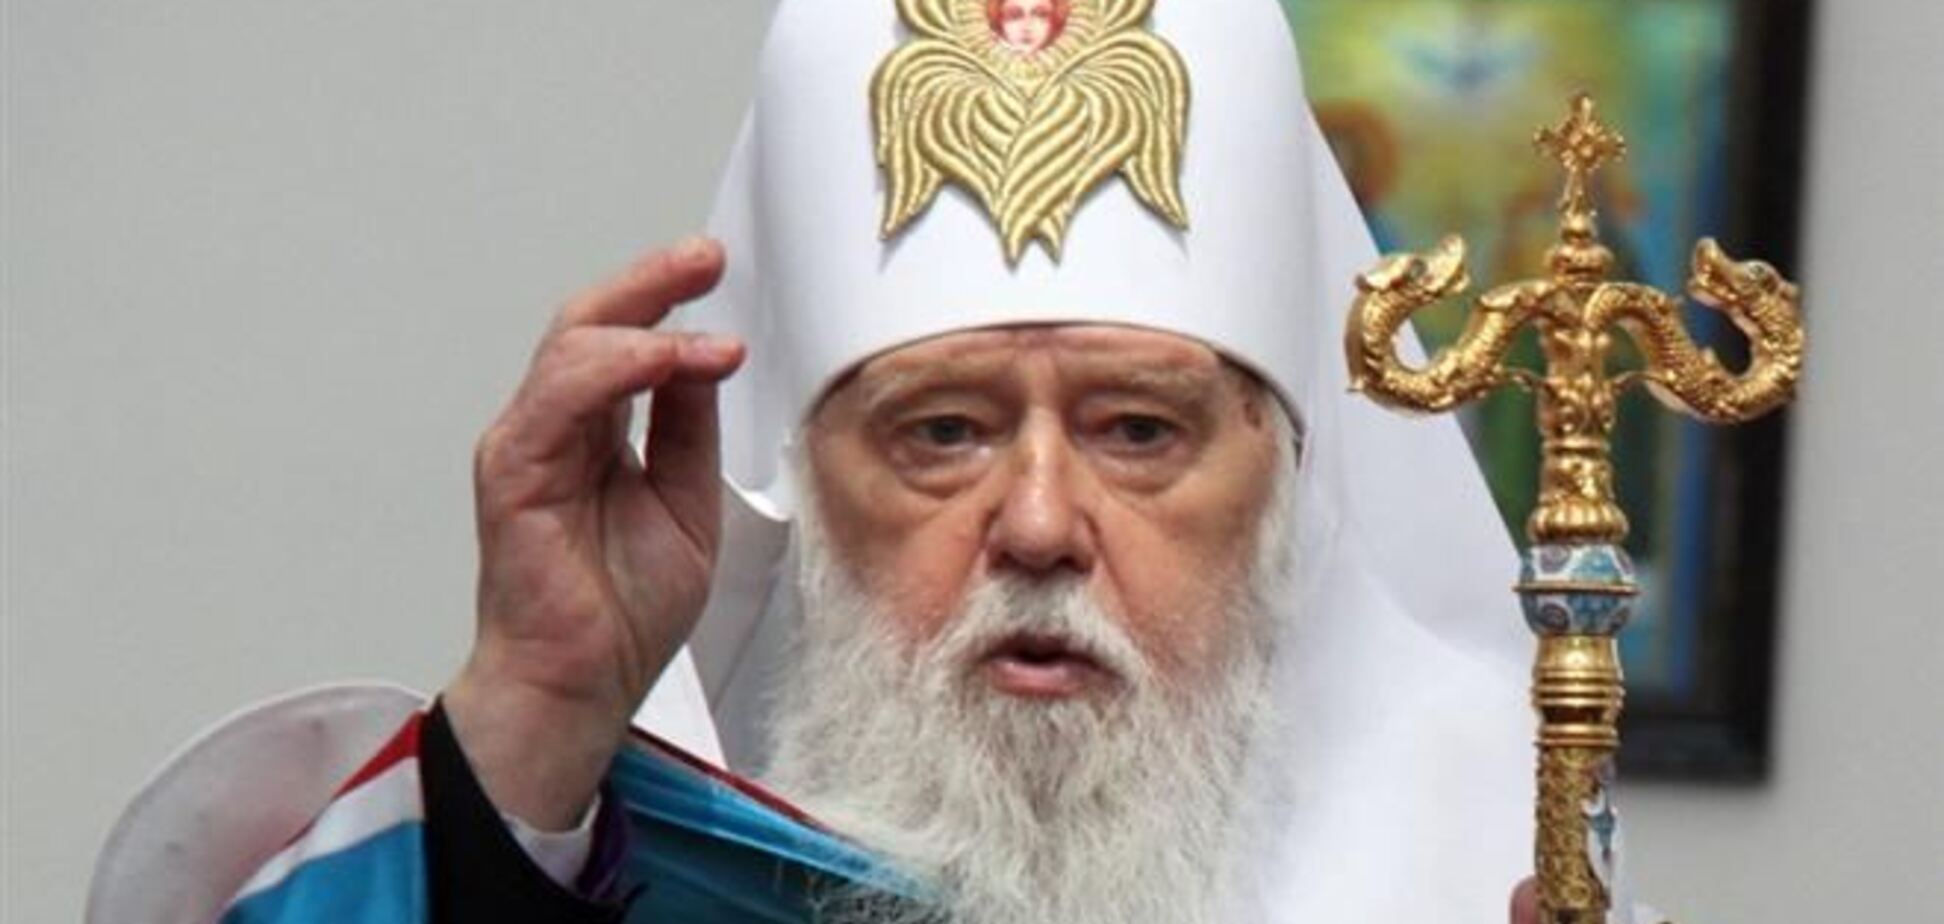 Процесс объединения православных церквей пока не может возобновиться - Филарет